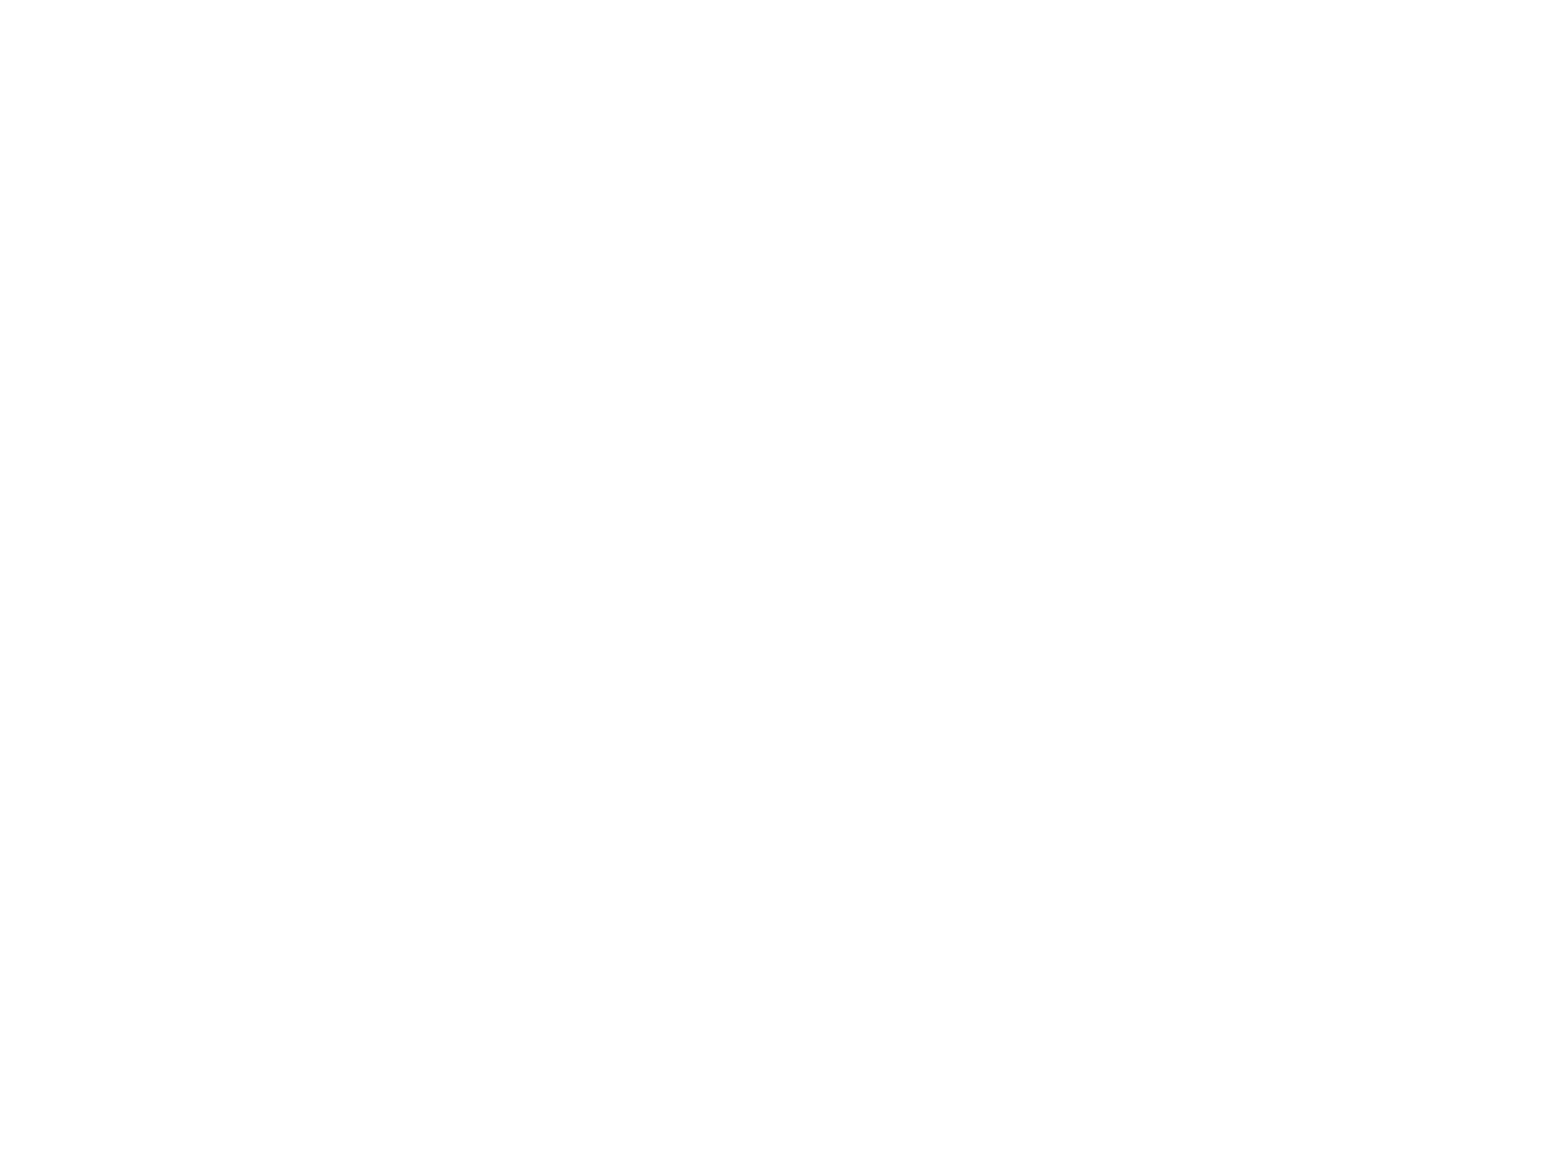 Aldrees Petroleum and Transport Services logo pour fonds sombres (PNG transparent)